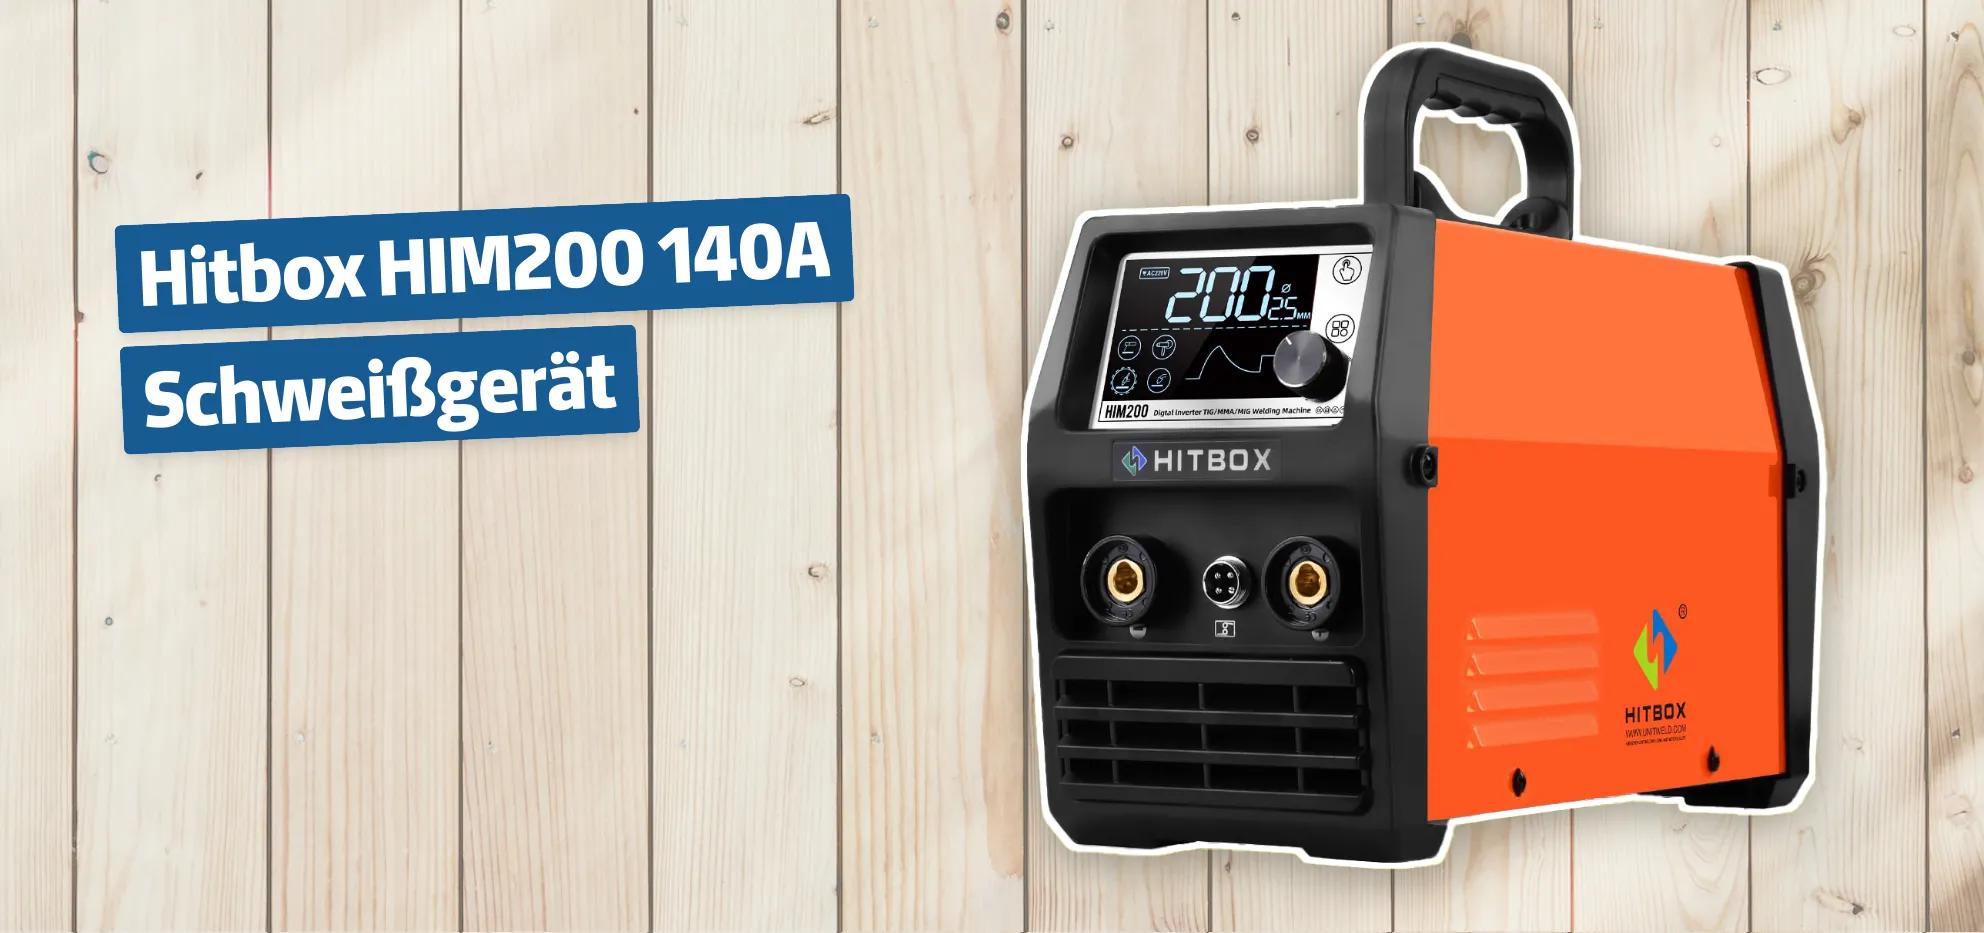 Hitbox HIM200 140A Schweißgerät